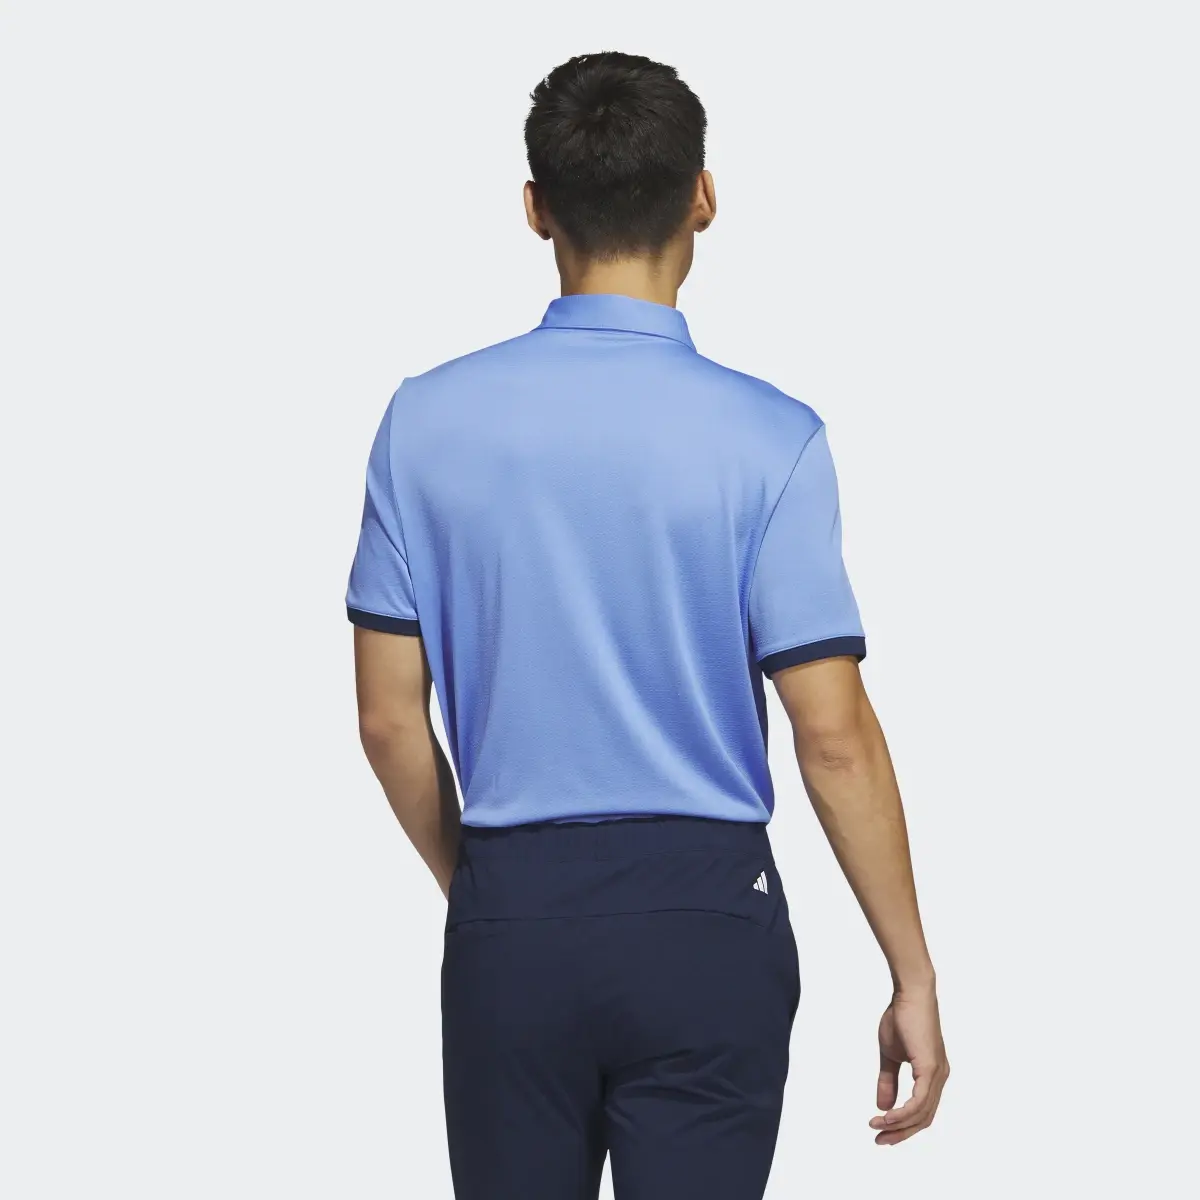 Adidas HEAT.RDY Golf Polo Shirt. 3